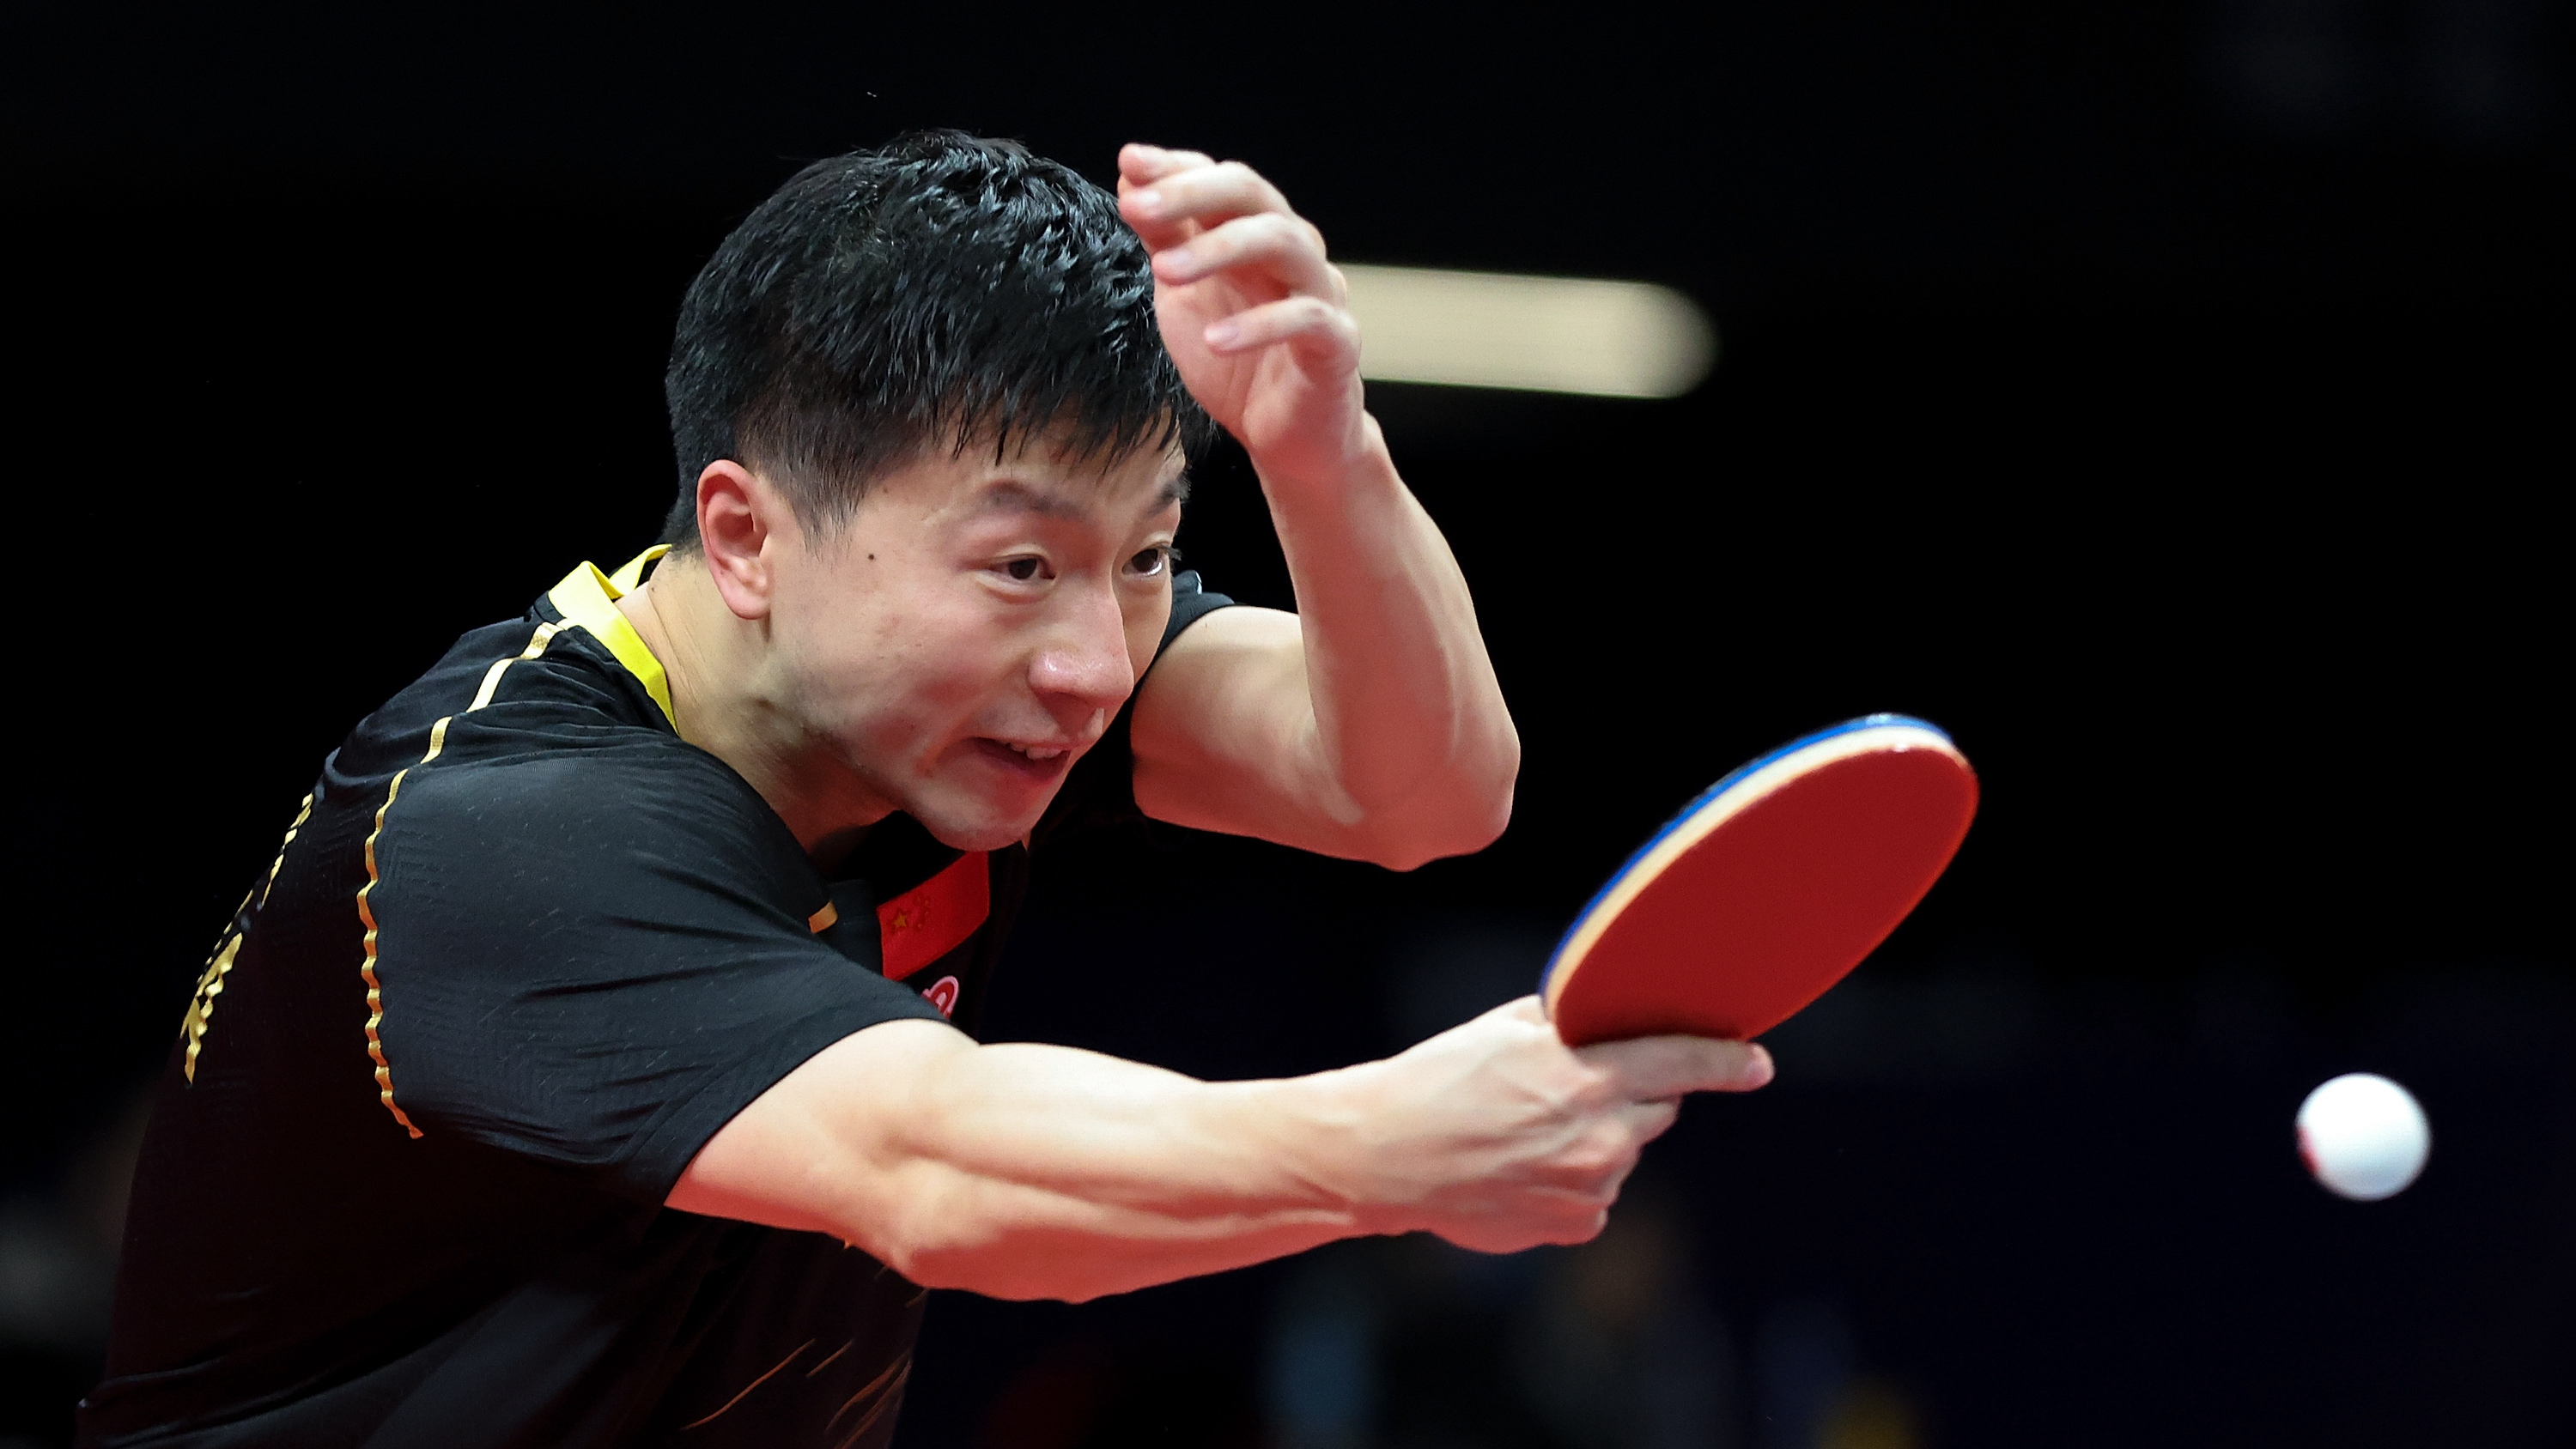 ITTF Finals Ma Long, Xu Xin set up semifinal clash